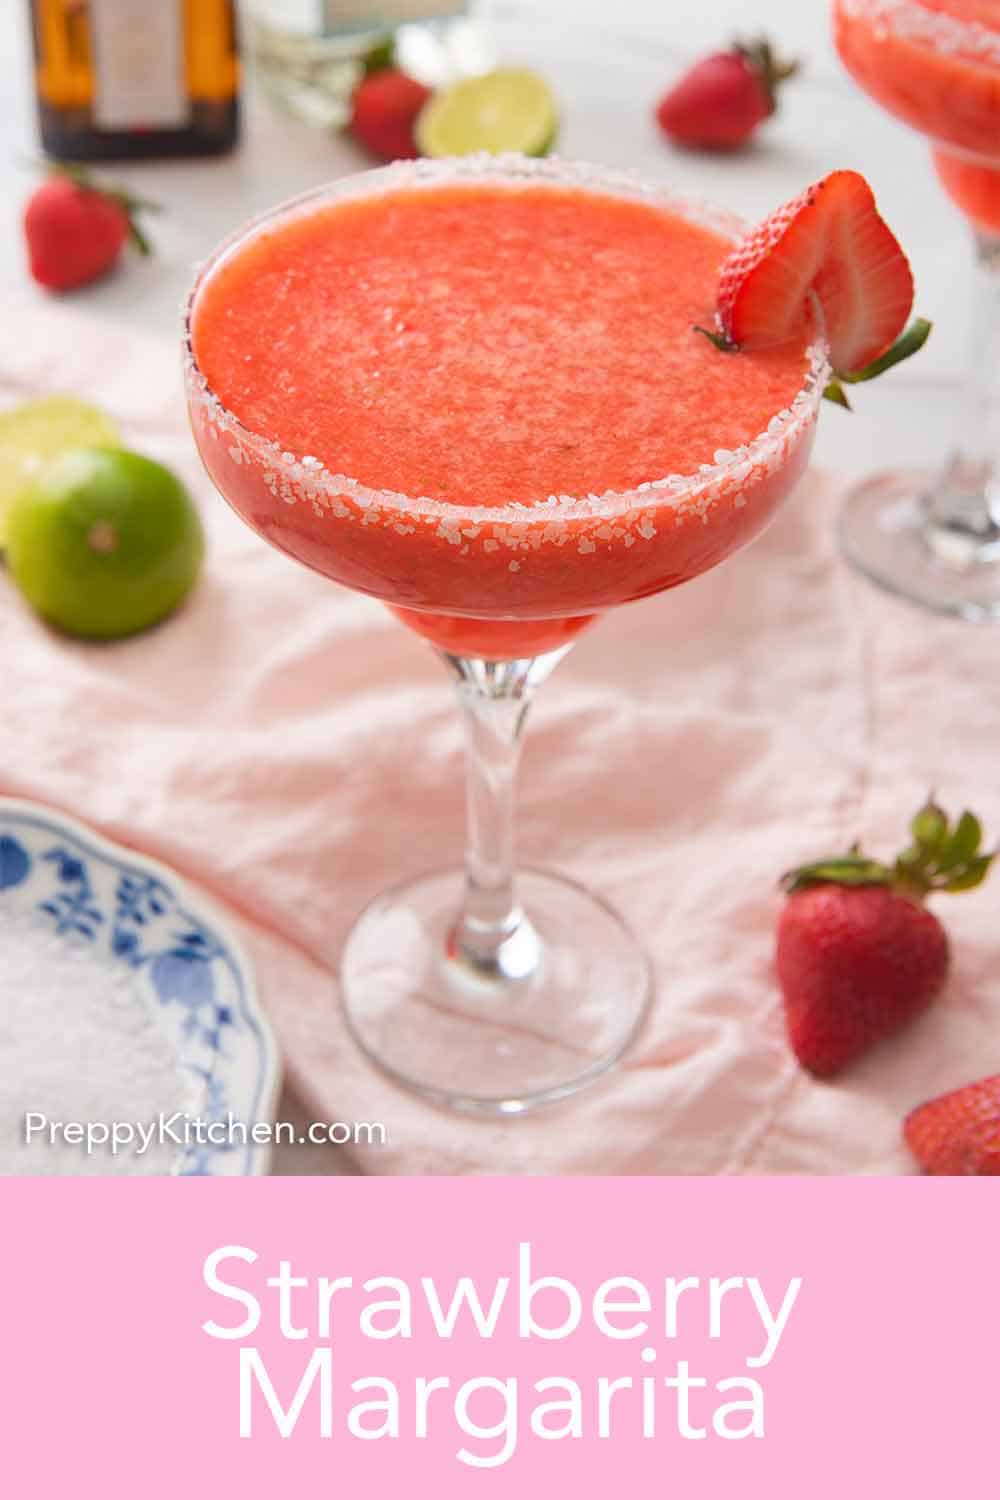 Strawberry Margarita - Preppy Kitchen